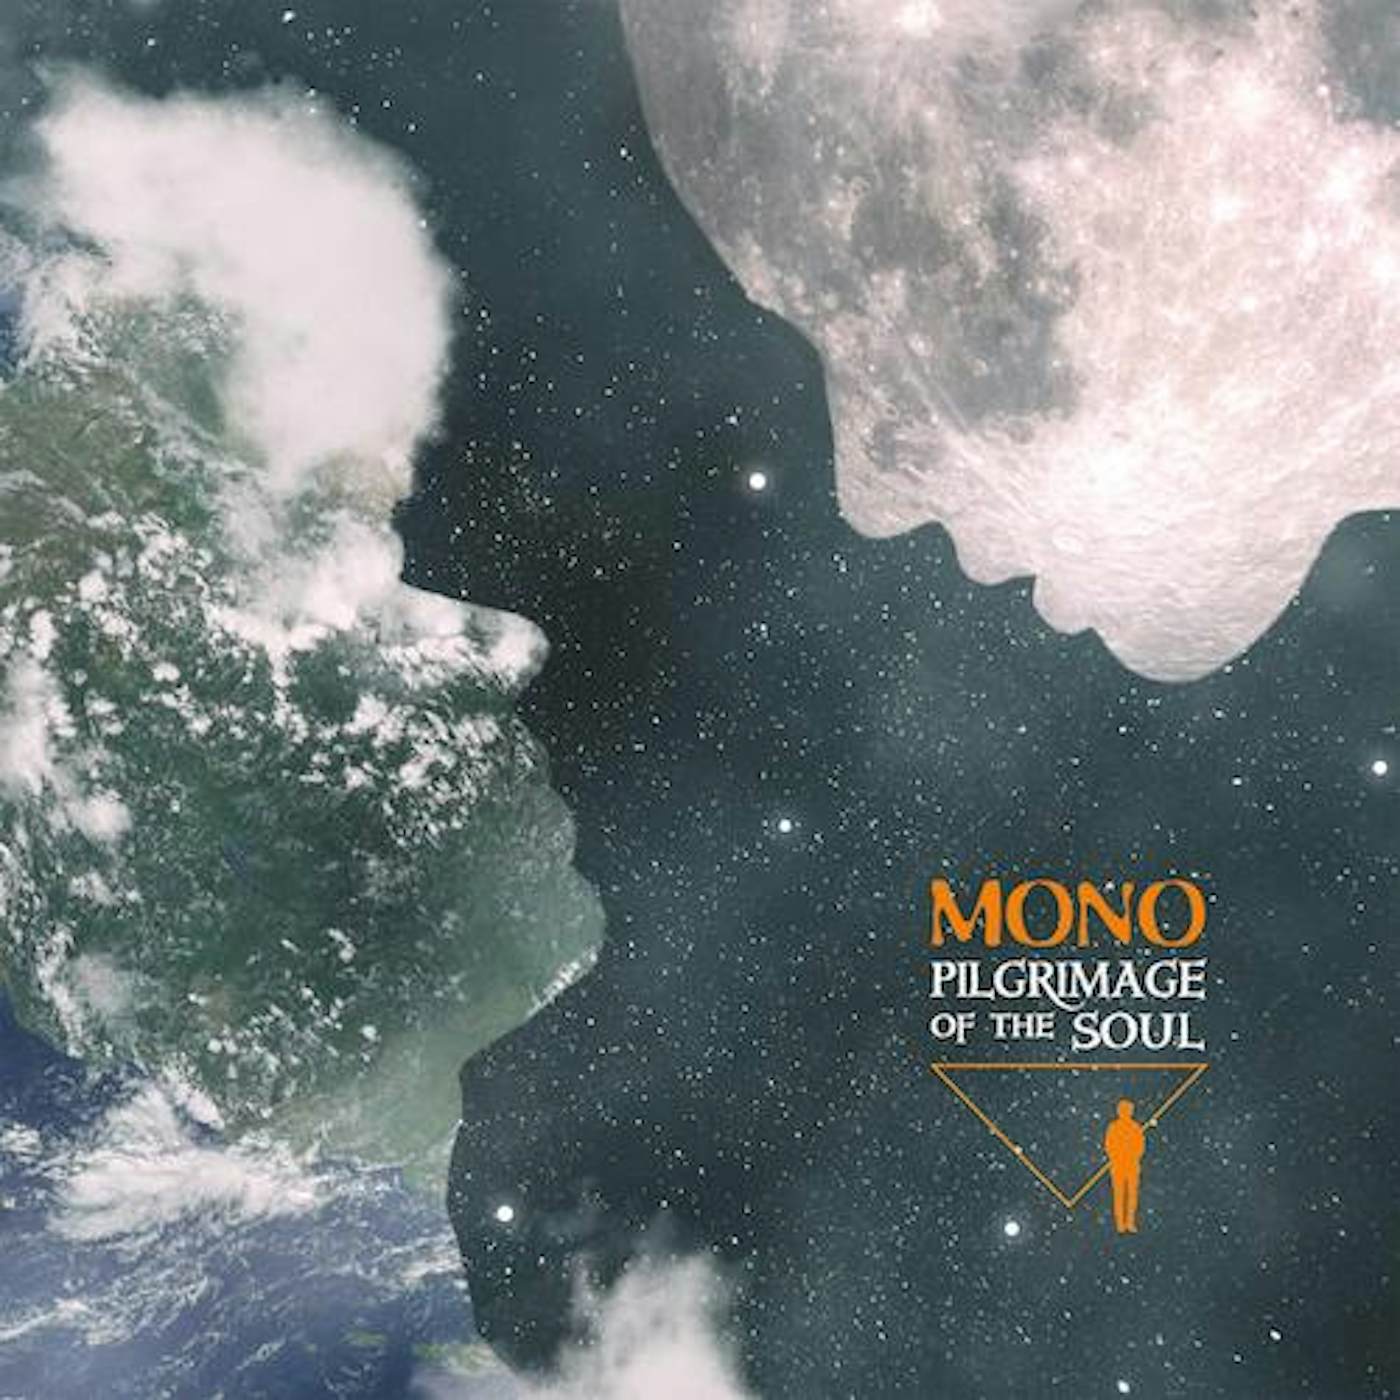 MONO Pilgrimage of the Soul Vinyl Record